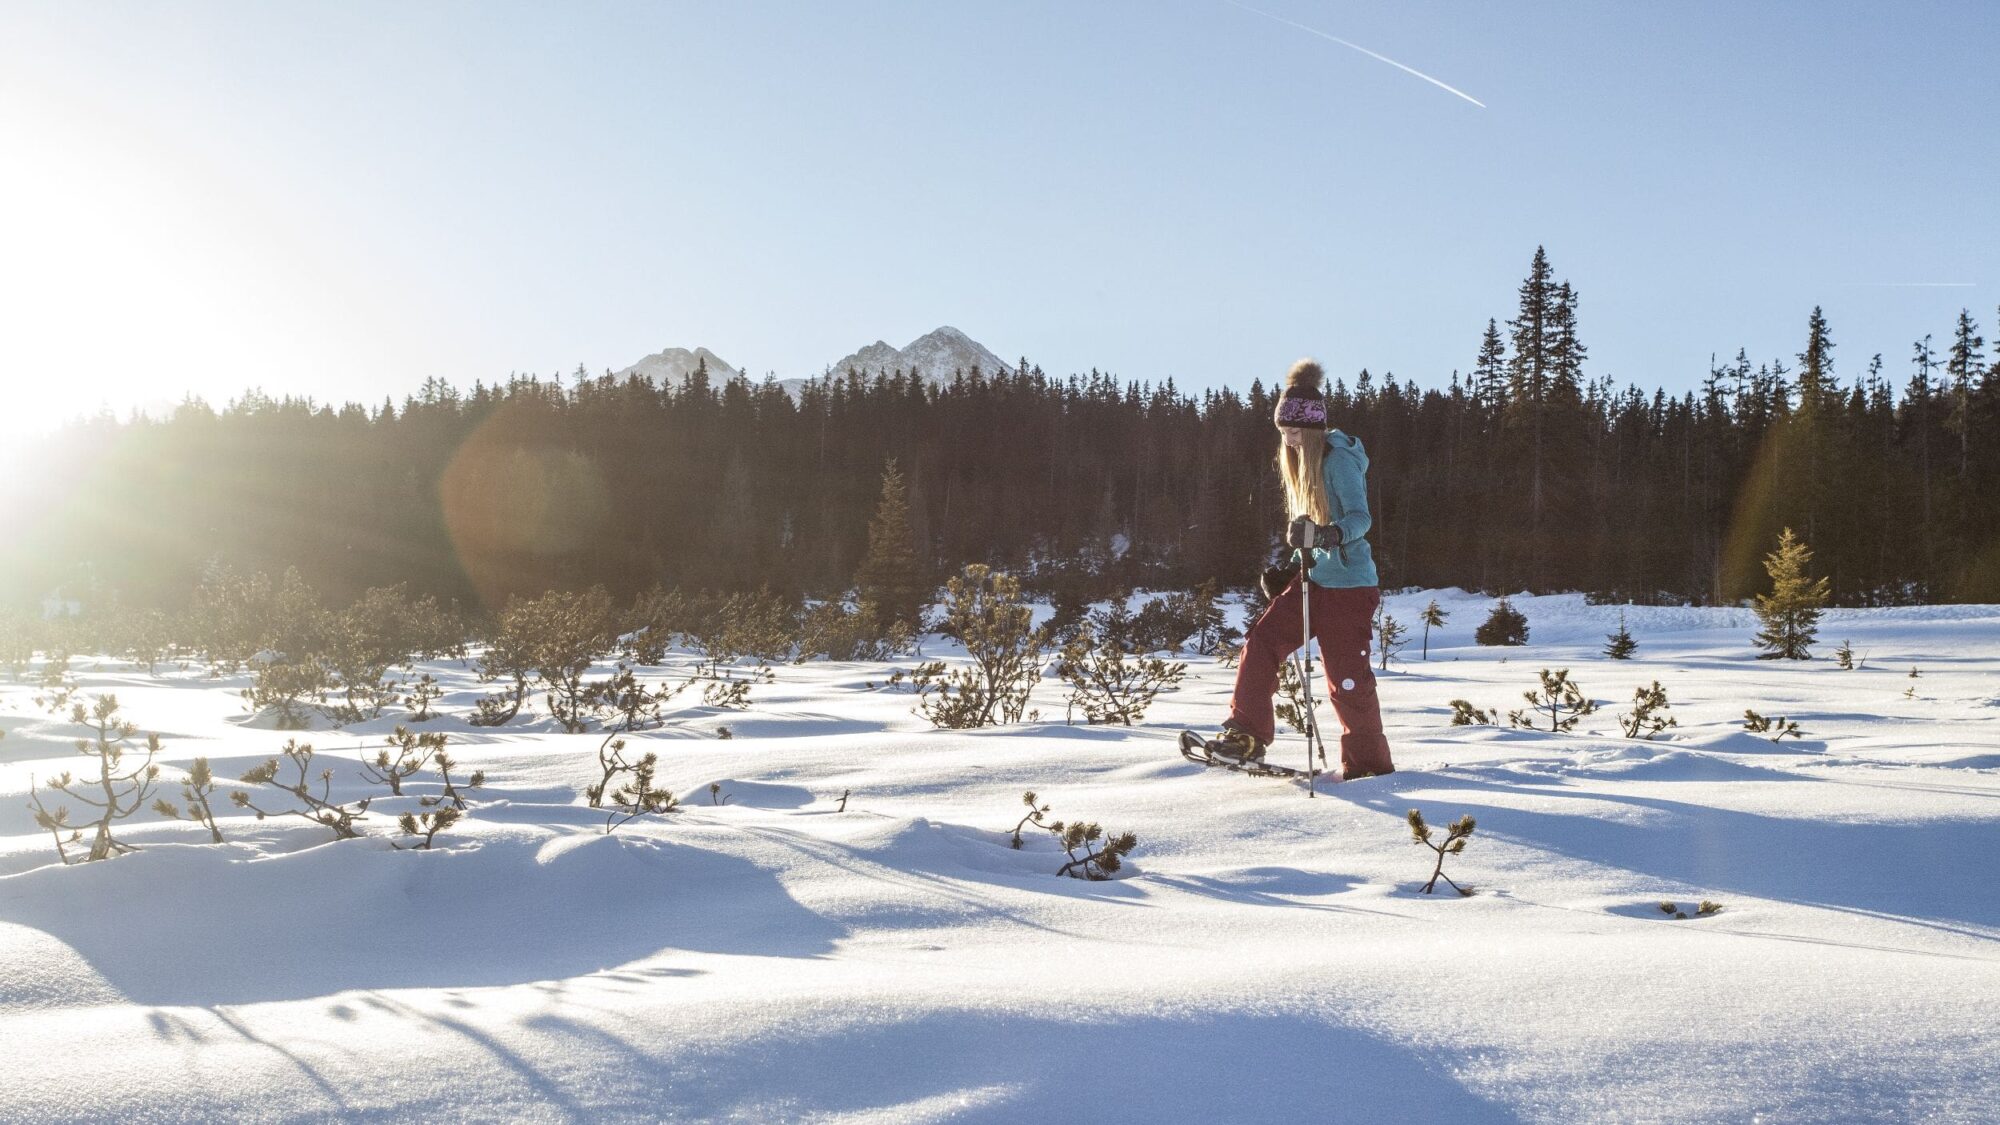 Presso l'hotel escursionistico e benessere Gassner è possibile effettuare splendide escursioni con le racchette da neve in un paesaggio innevato.